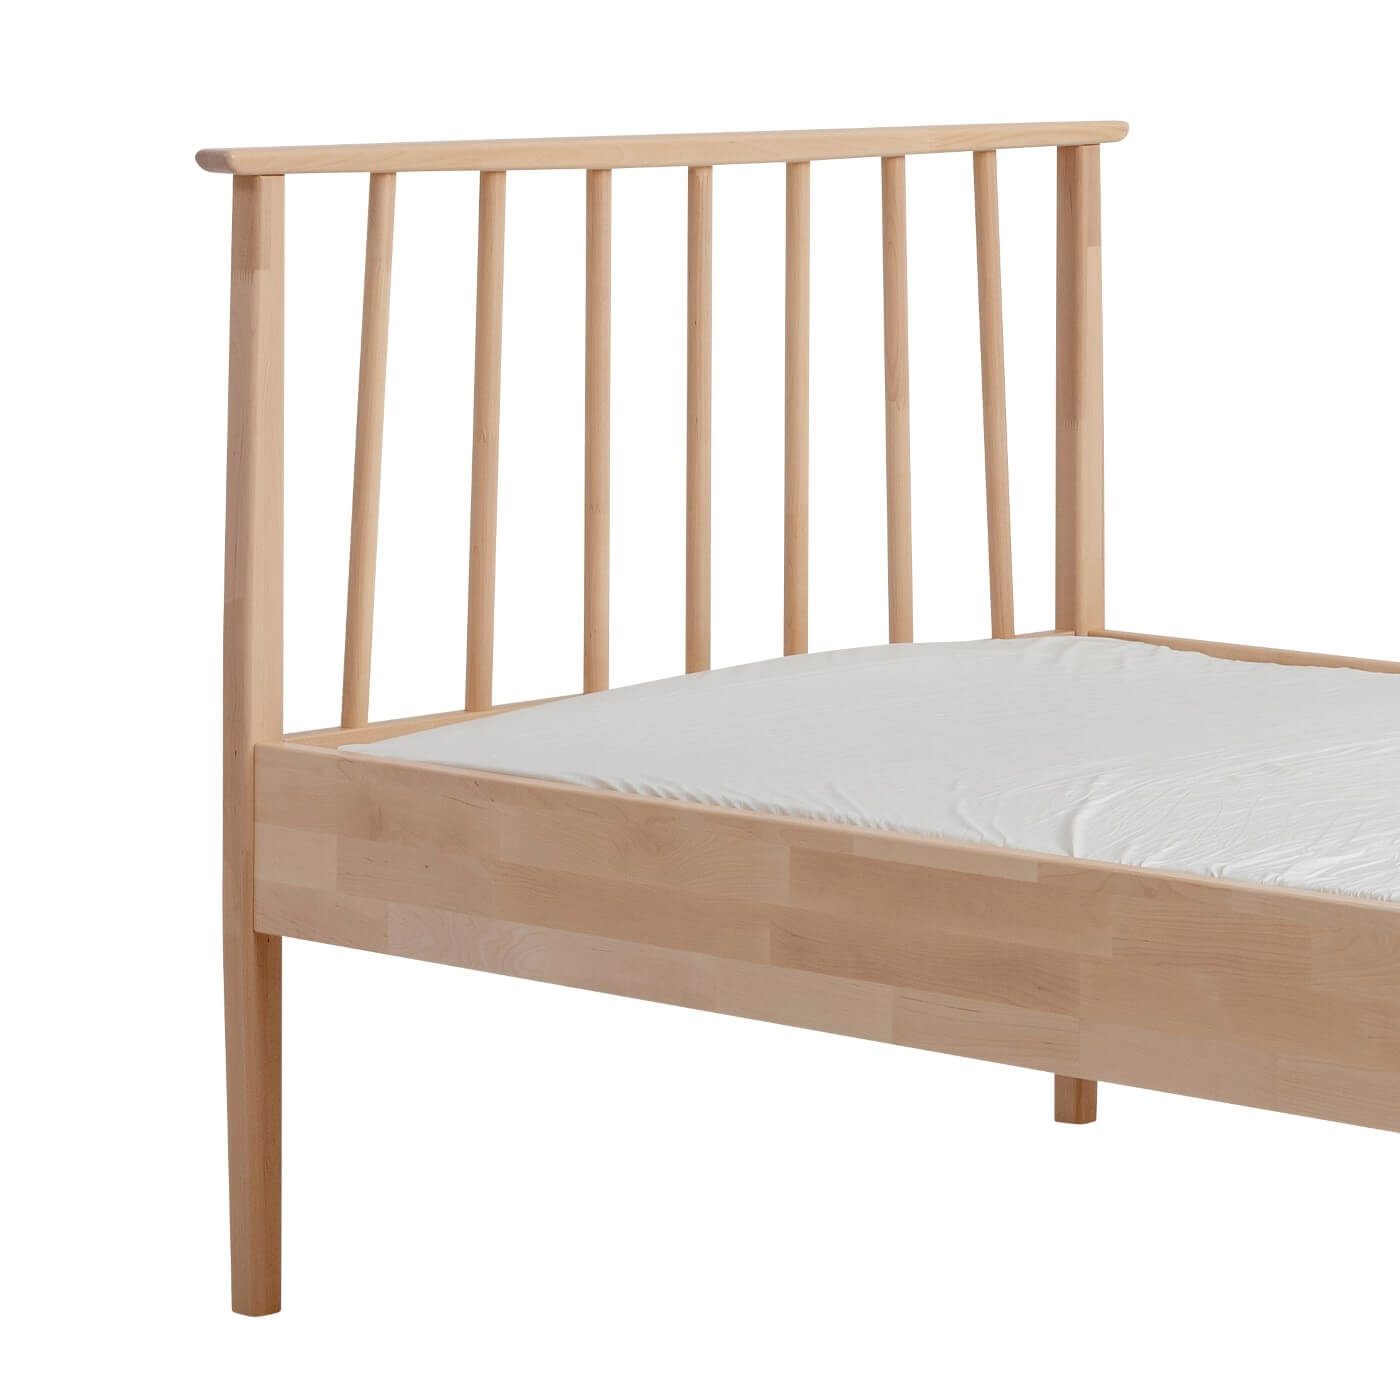 Łóżko drewniane 90x200 NOEL. Fragment łóżka z drewnianym wysokim ażurowym szczytem i materacem. Nowoczesny skandynawski design